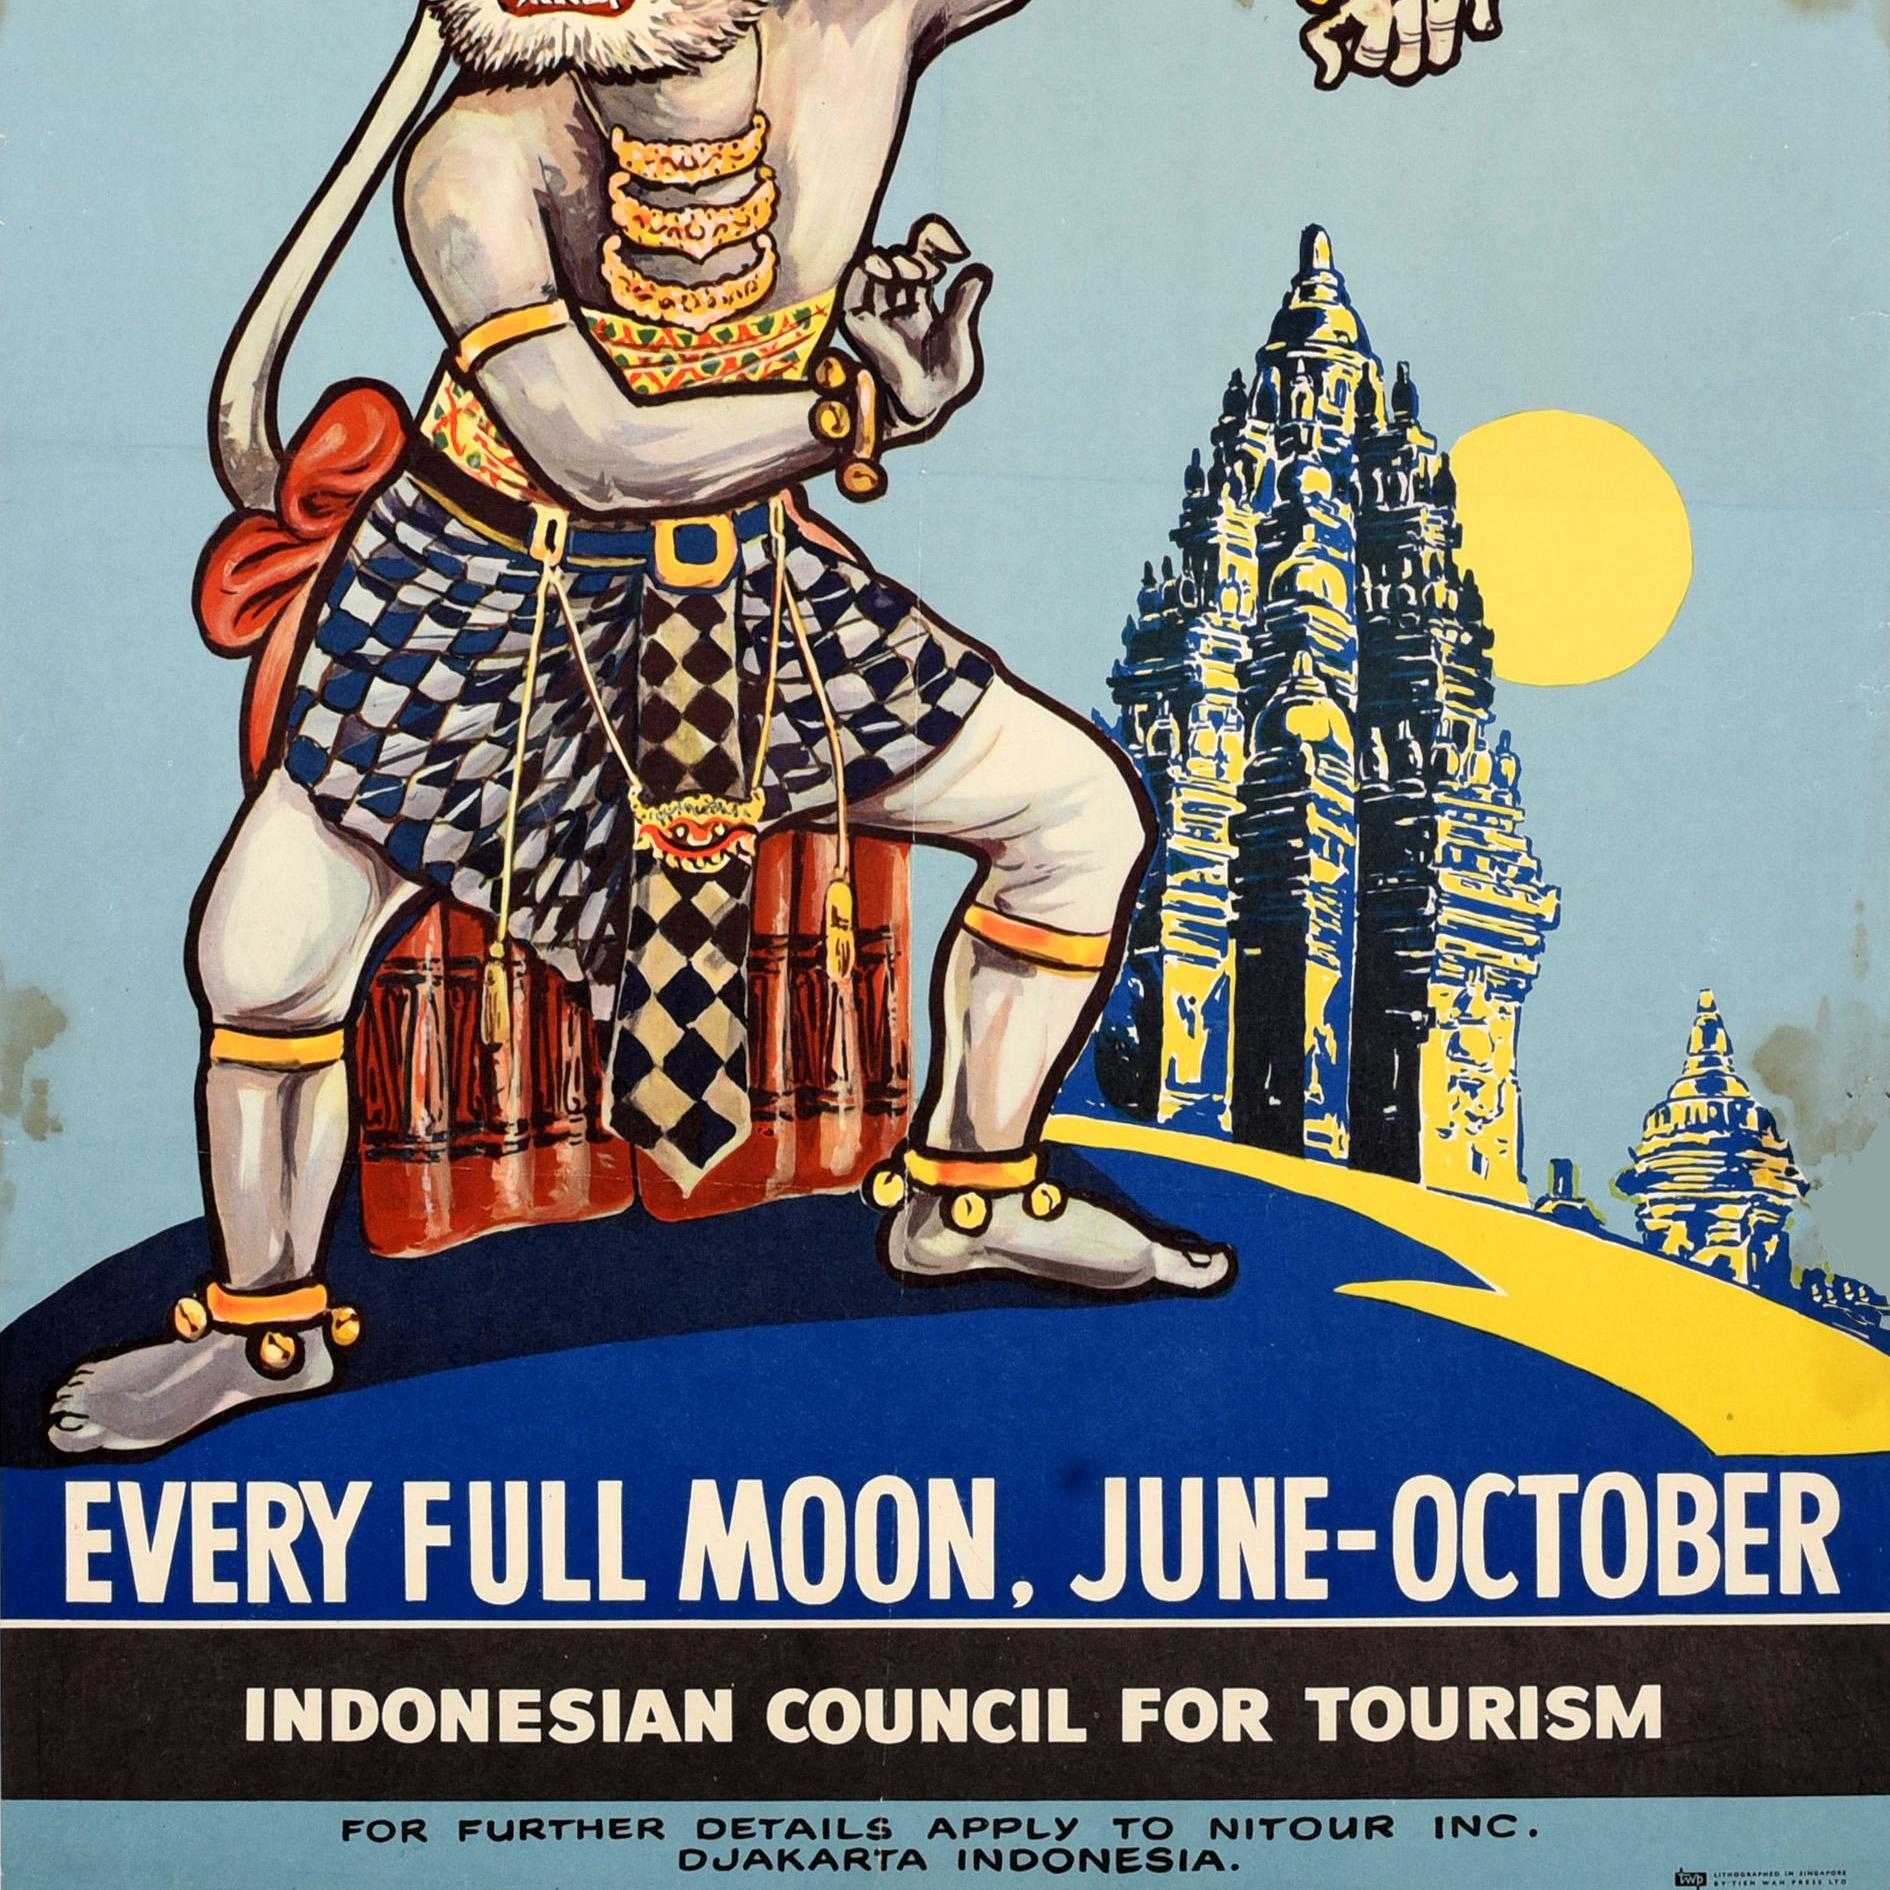 Original-Reise-Werbeplakat für das Ramayana-Ballett-Festival in Indonesien, das jedes Jahr bei Vollmond von Juni bis Oktober stattfindet. Es zeigt eine Tanzaufführung des Affengottes mit einem alten Tempel und einem hellen Mond im Hintergrund. Die